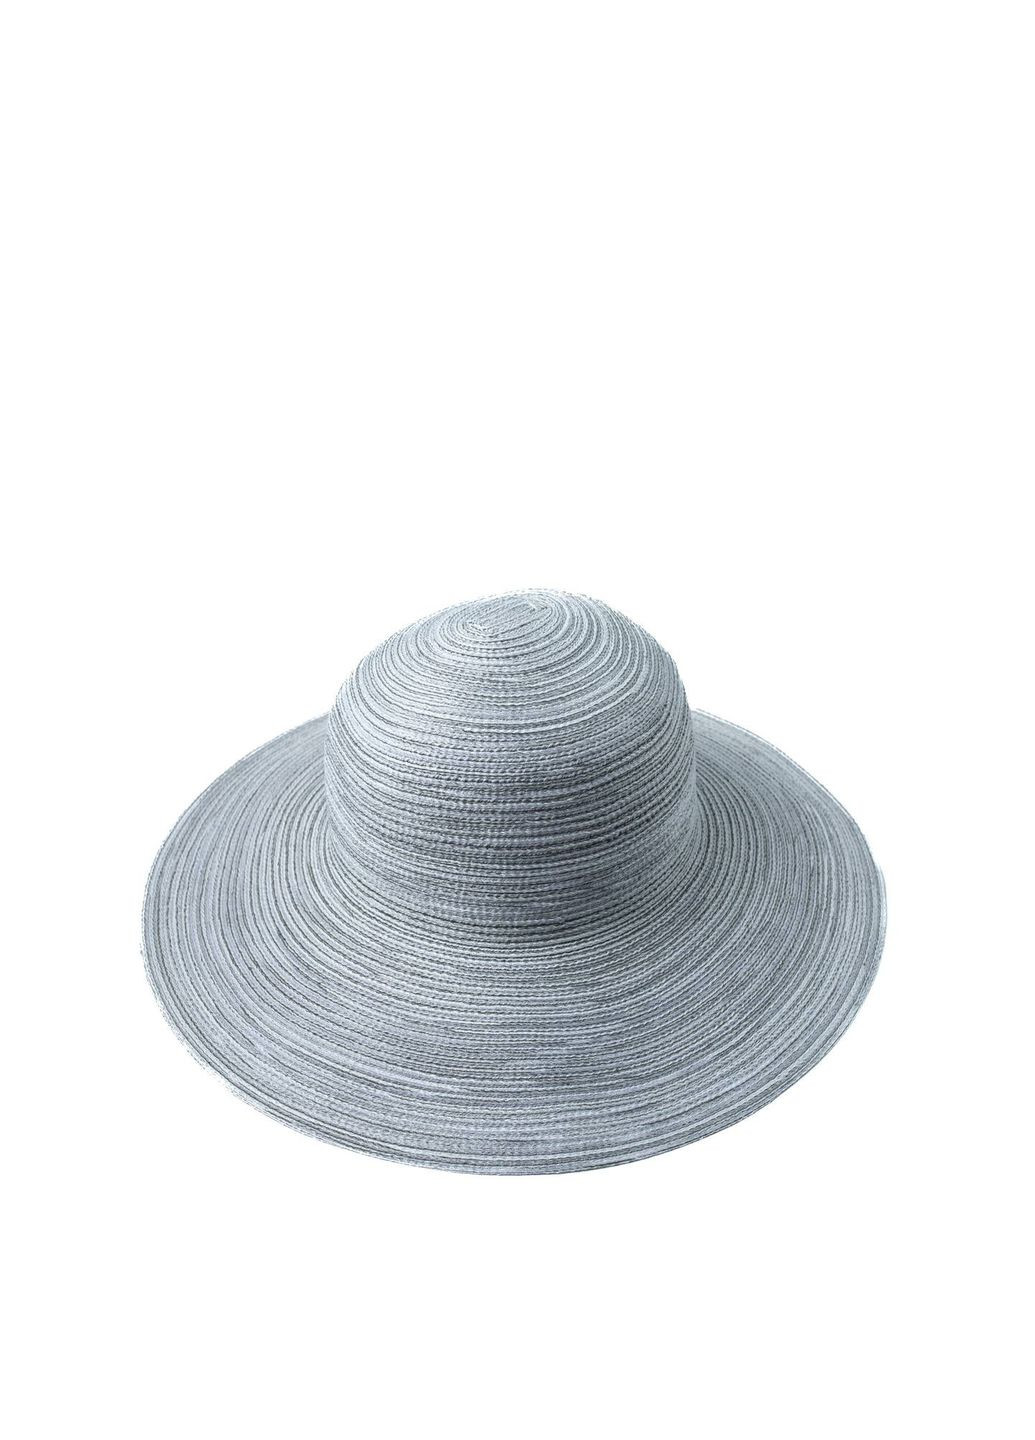 Шляпа слауч женская хлопок серая ЯСМИН LuckyLOOK 444-362 (292668971)